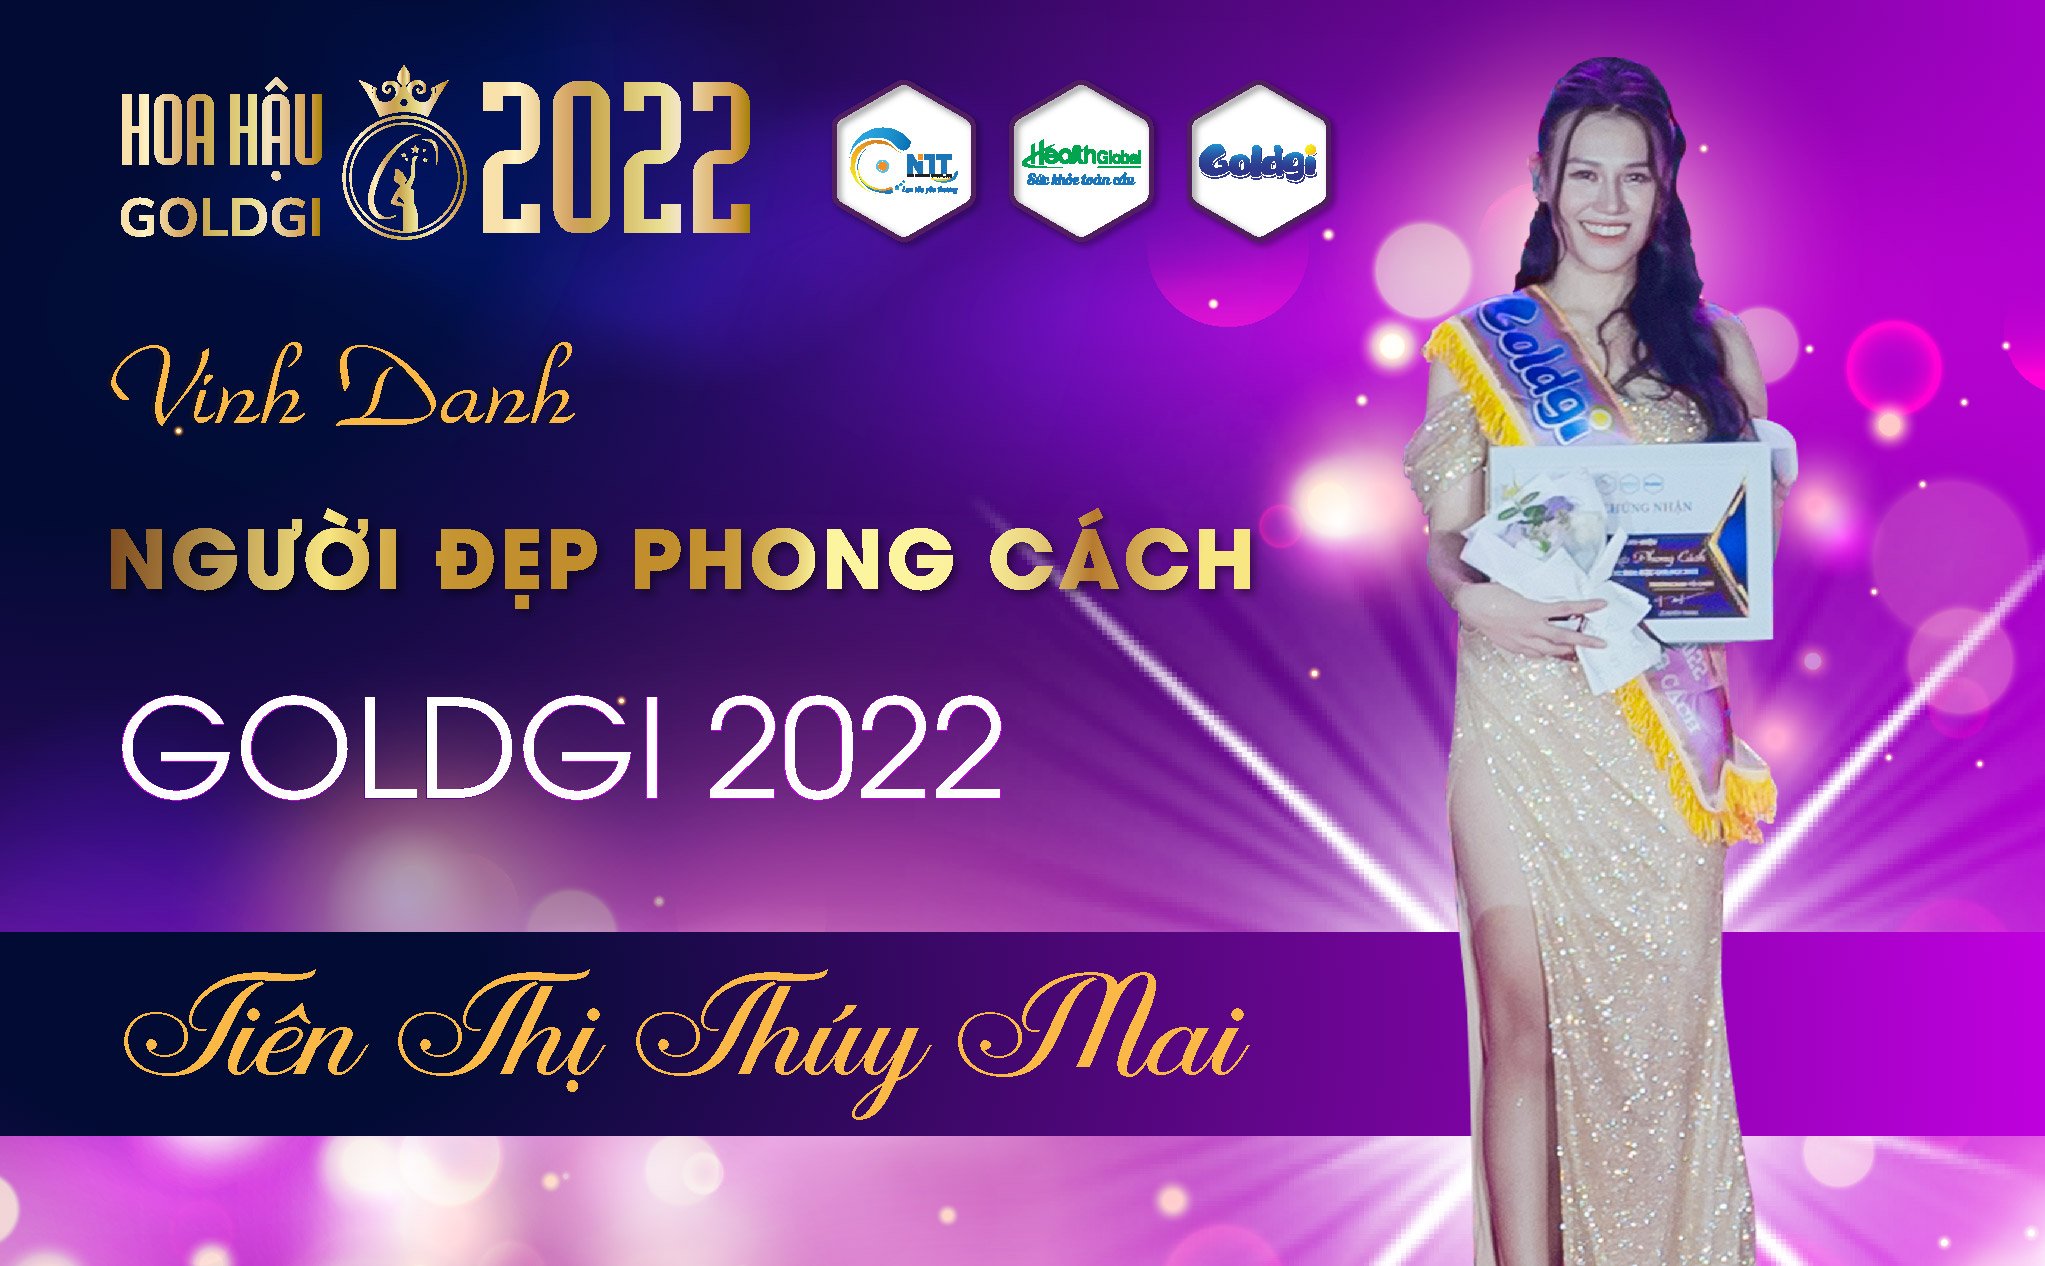 Đêm chung kết Hoa Hậu Goldgi 2022 bùng nổ mạnh mẽ với người đẹp phong cách Tiên Thị Thúy Mai- Đại diện hệ thống Siêu thị Ba Sao. 